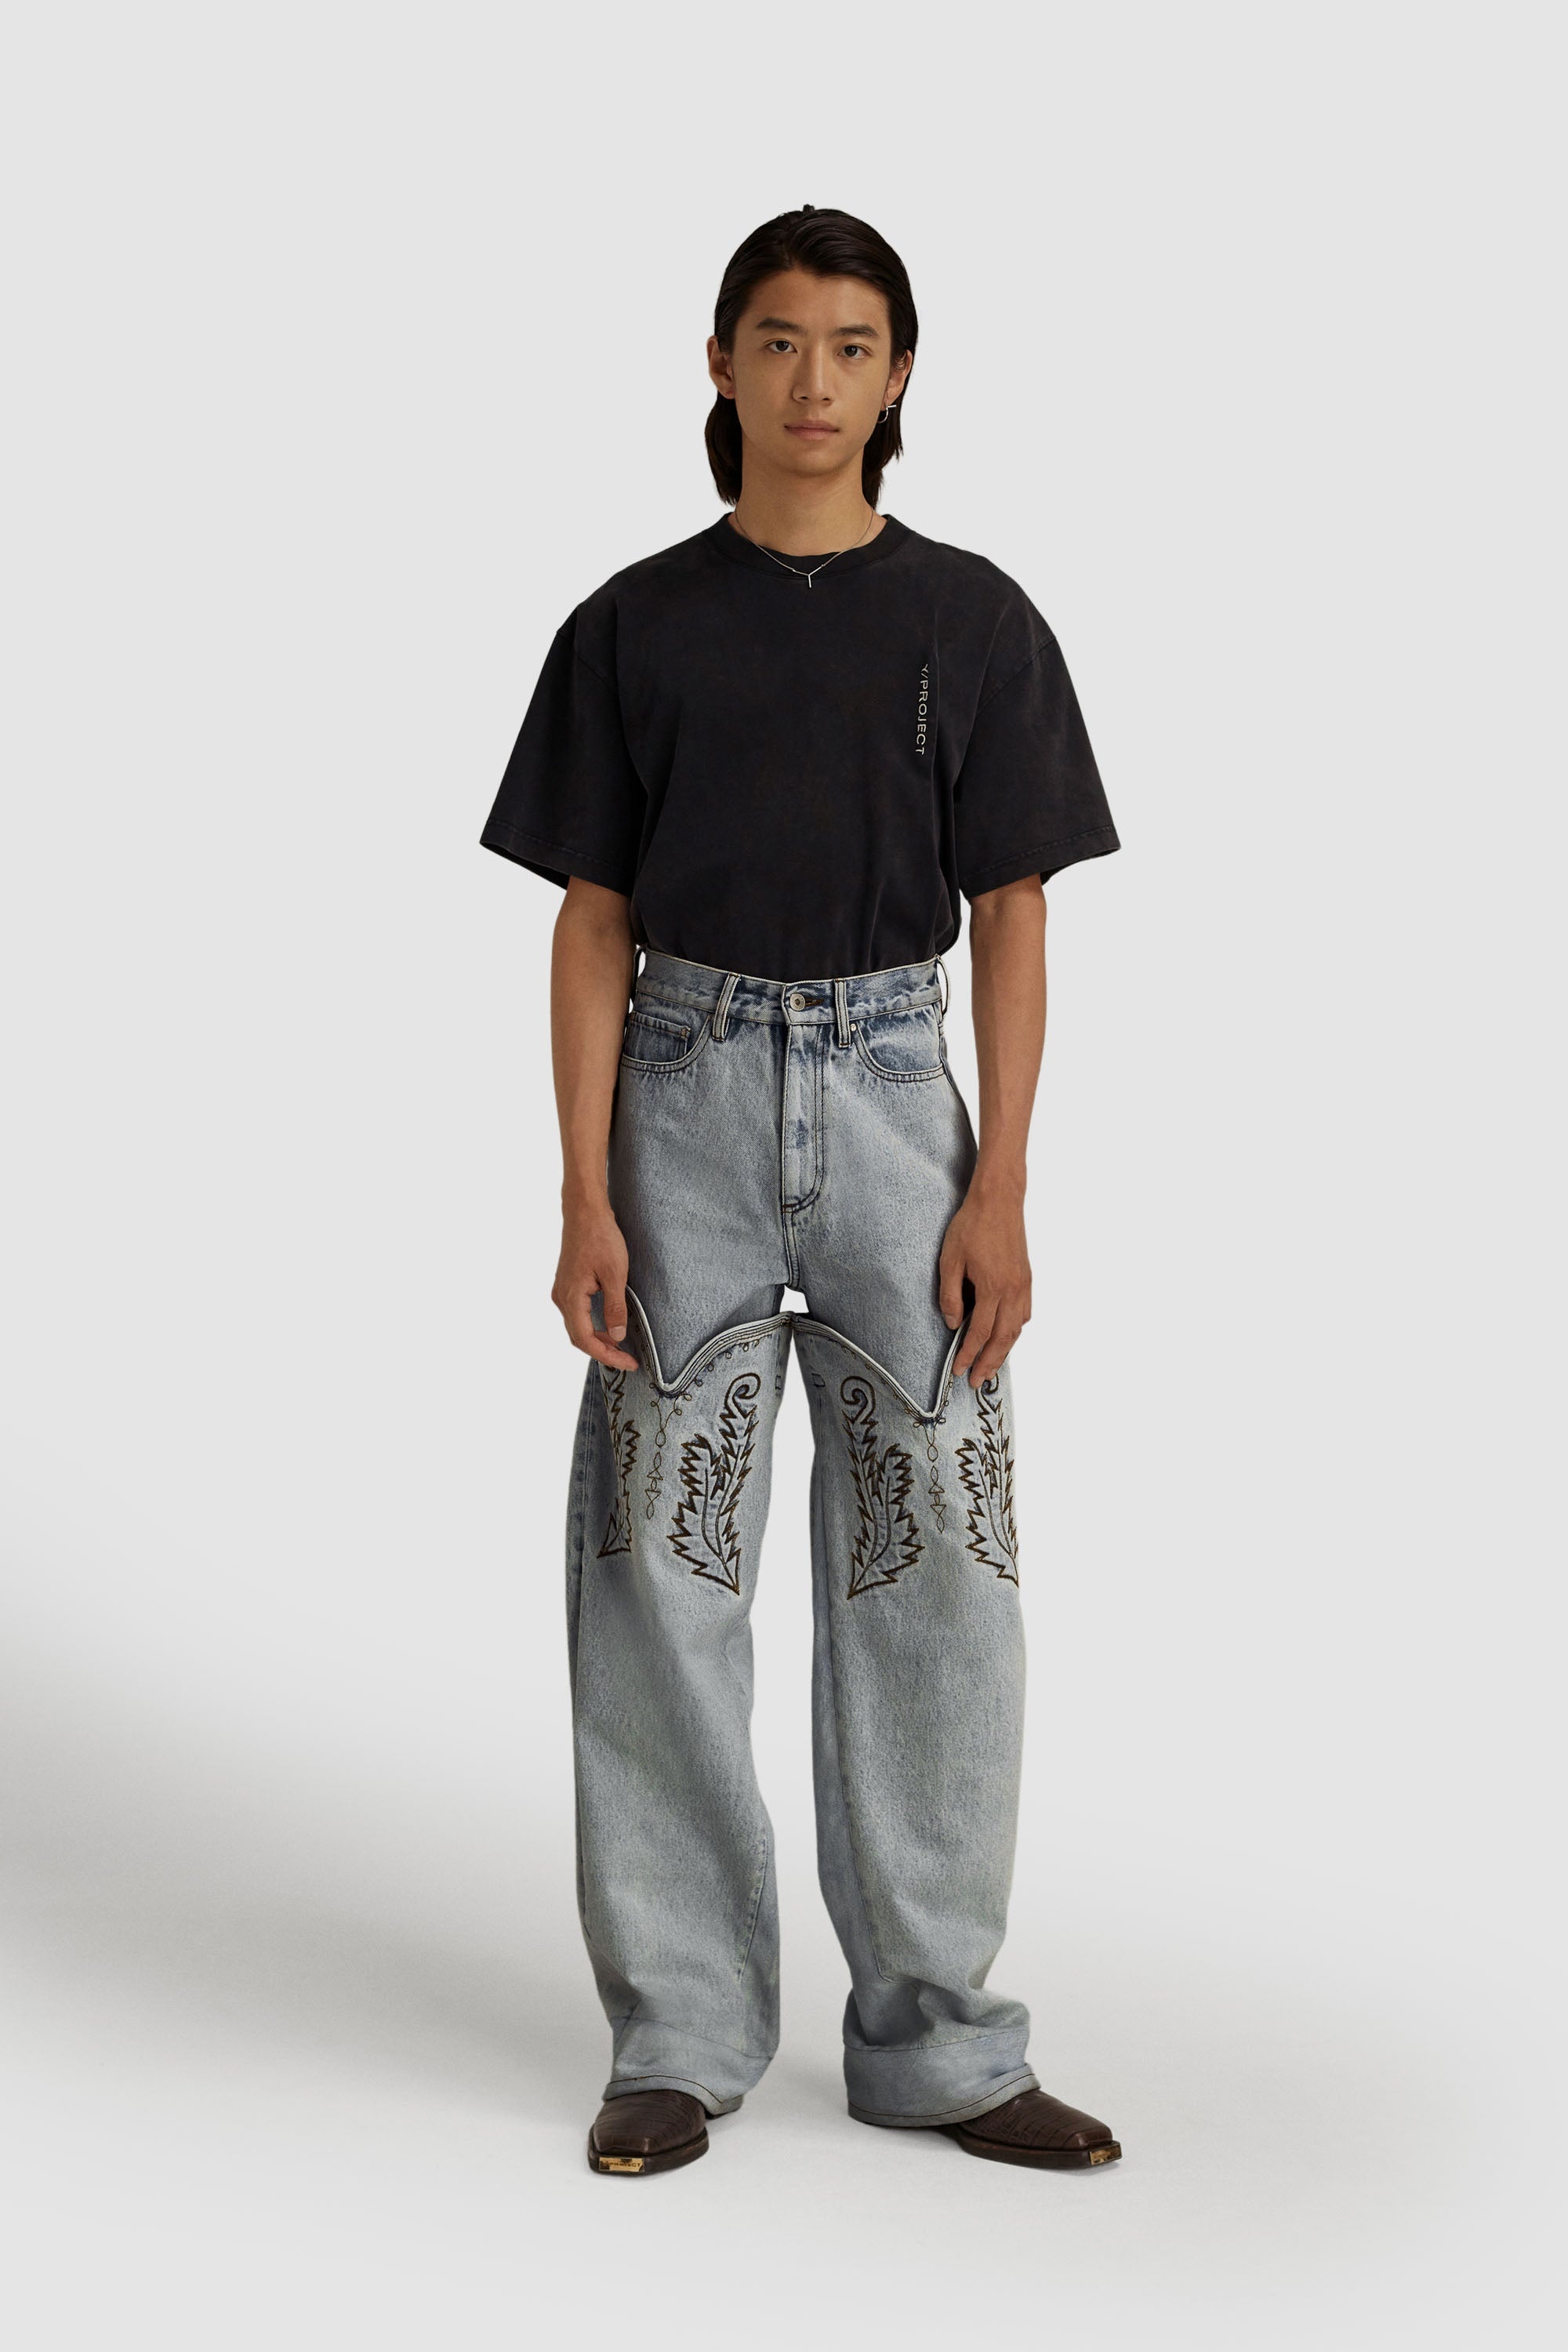 yproject cowboy cuff jeans デニム総丈約110cm - パンツ